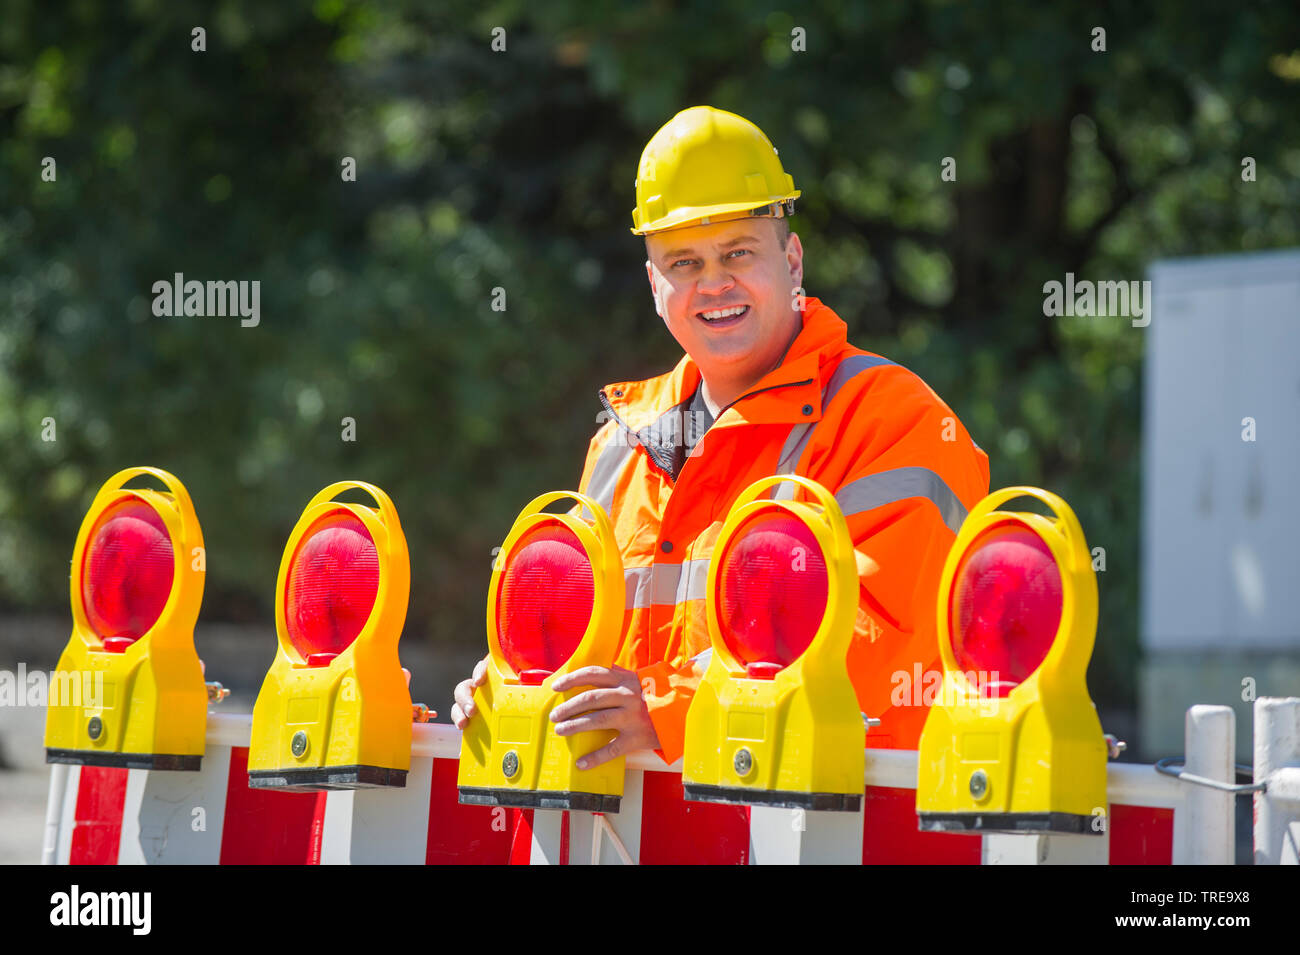 Travailleur de la construction d'une veste haute visibilité orange, l'installation d'un barrage routier avec la construction de détresse Banque D'Images